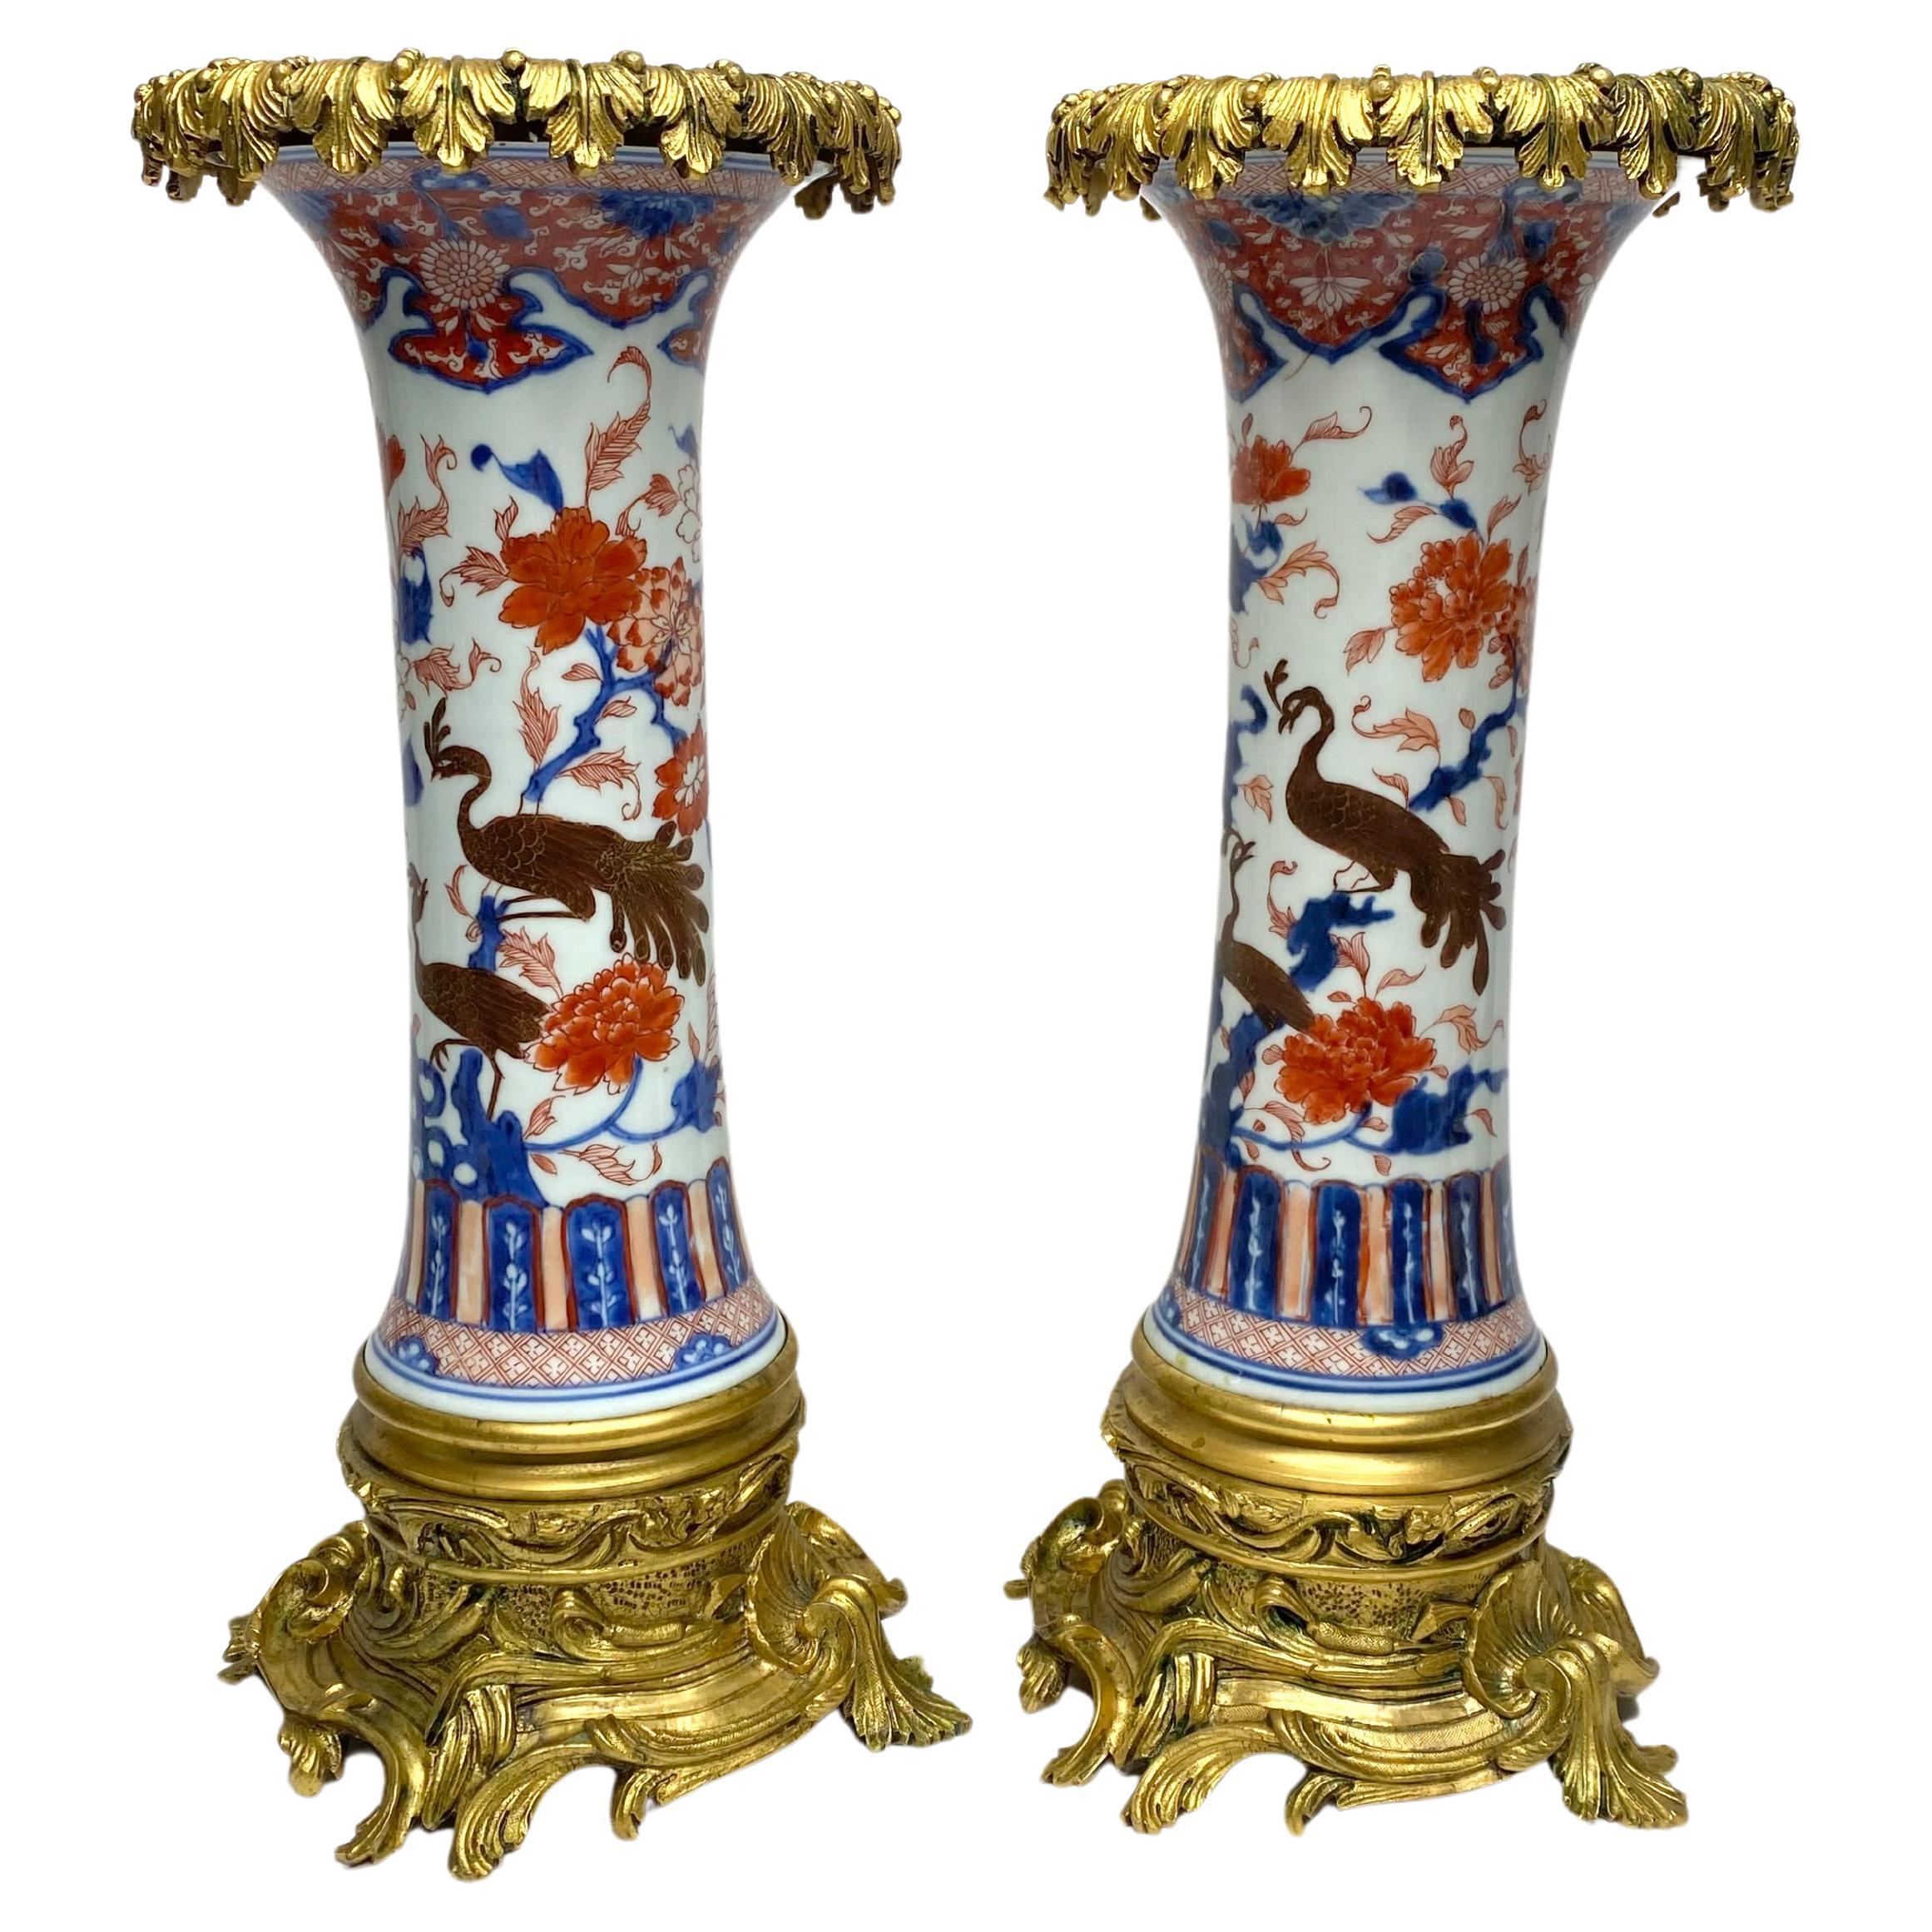 Paar chinesische Imari-Porzellan- und Goldbronze-Vasen aus der Zeit um 1700. Kangxi-Periode.